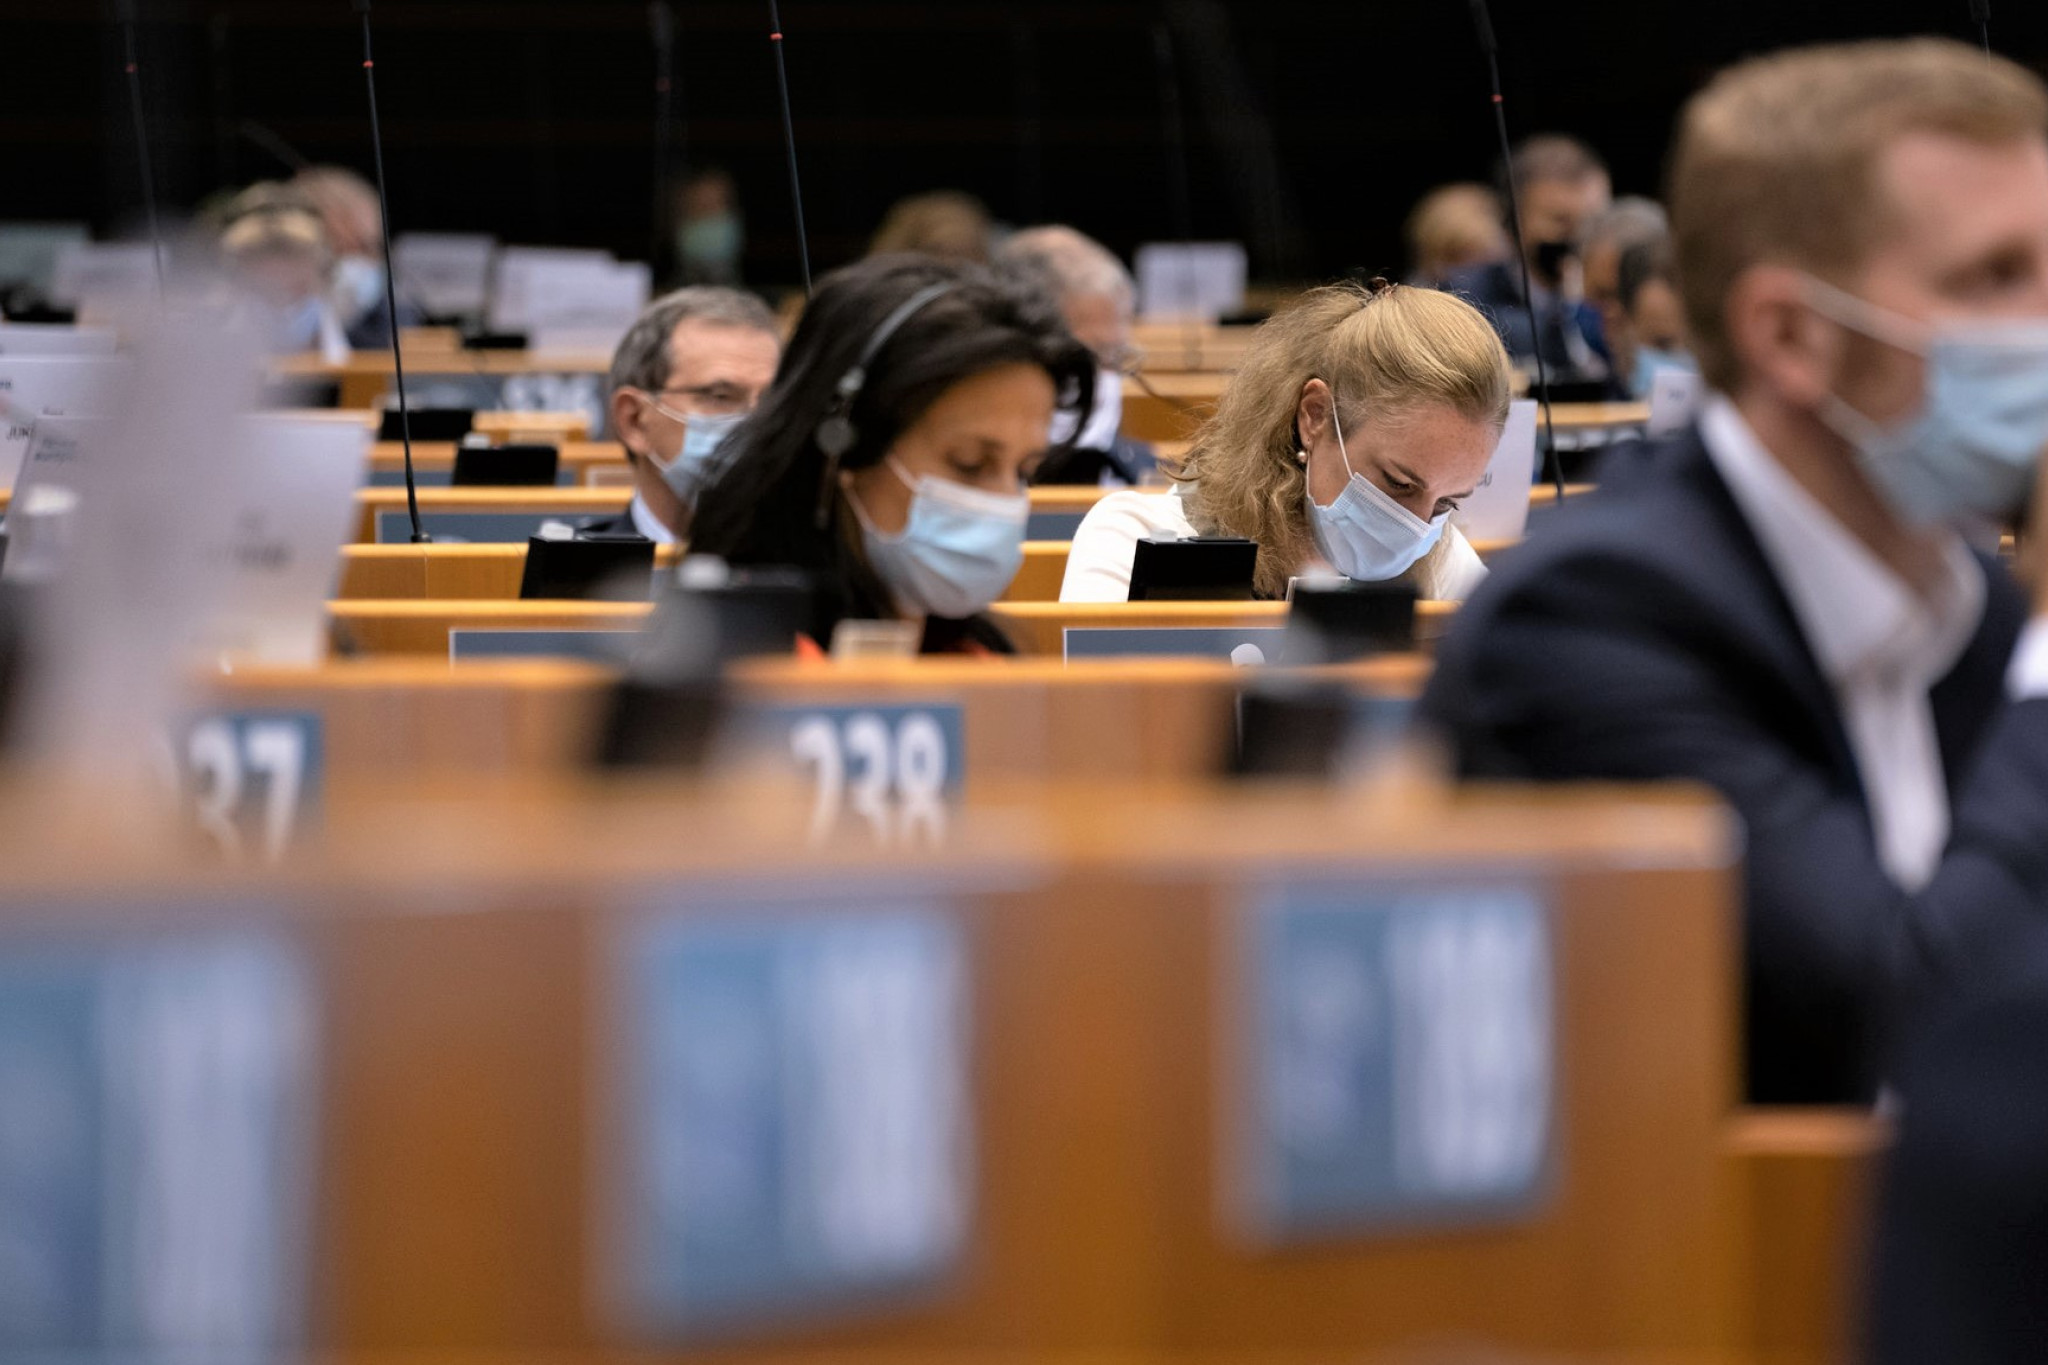 MEP'ere sidder med mundbind i Parlamentet